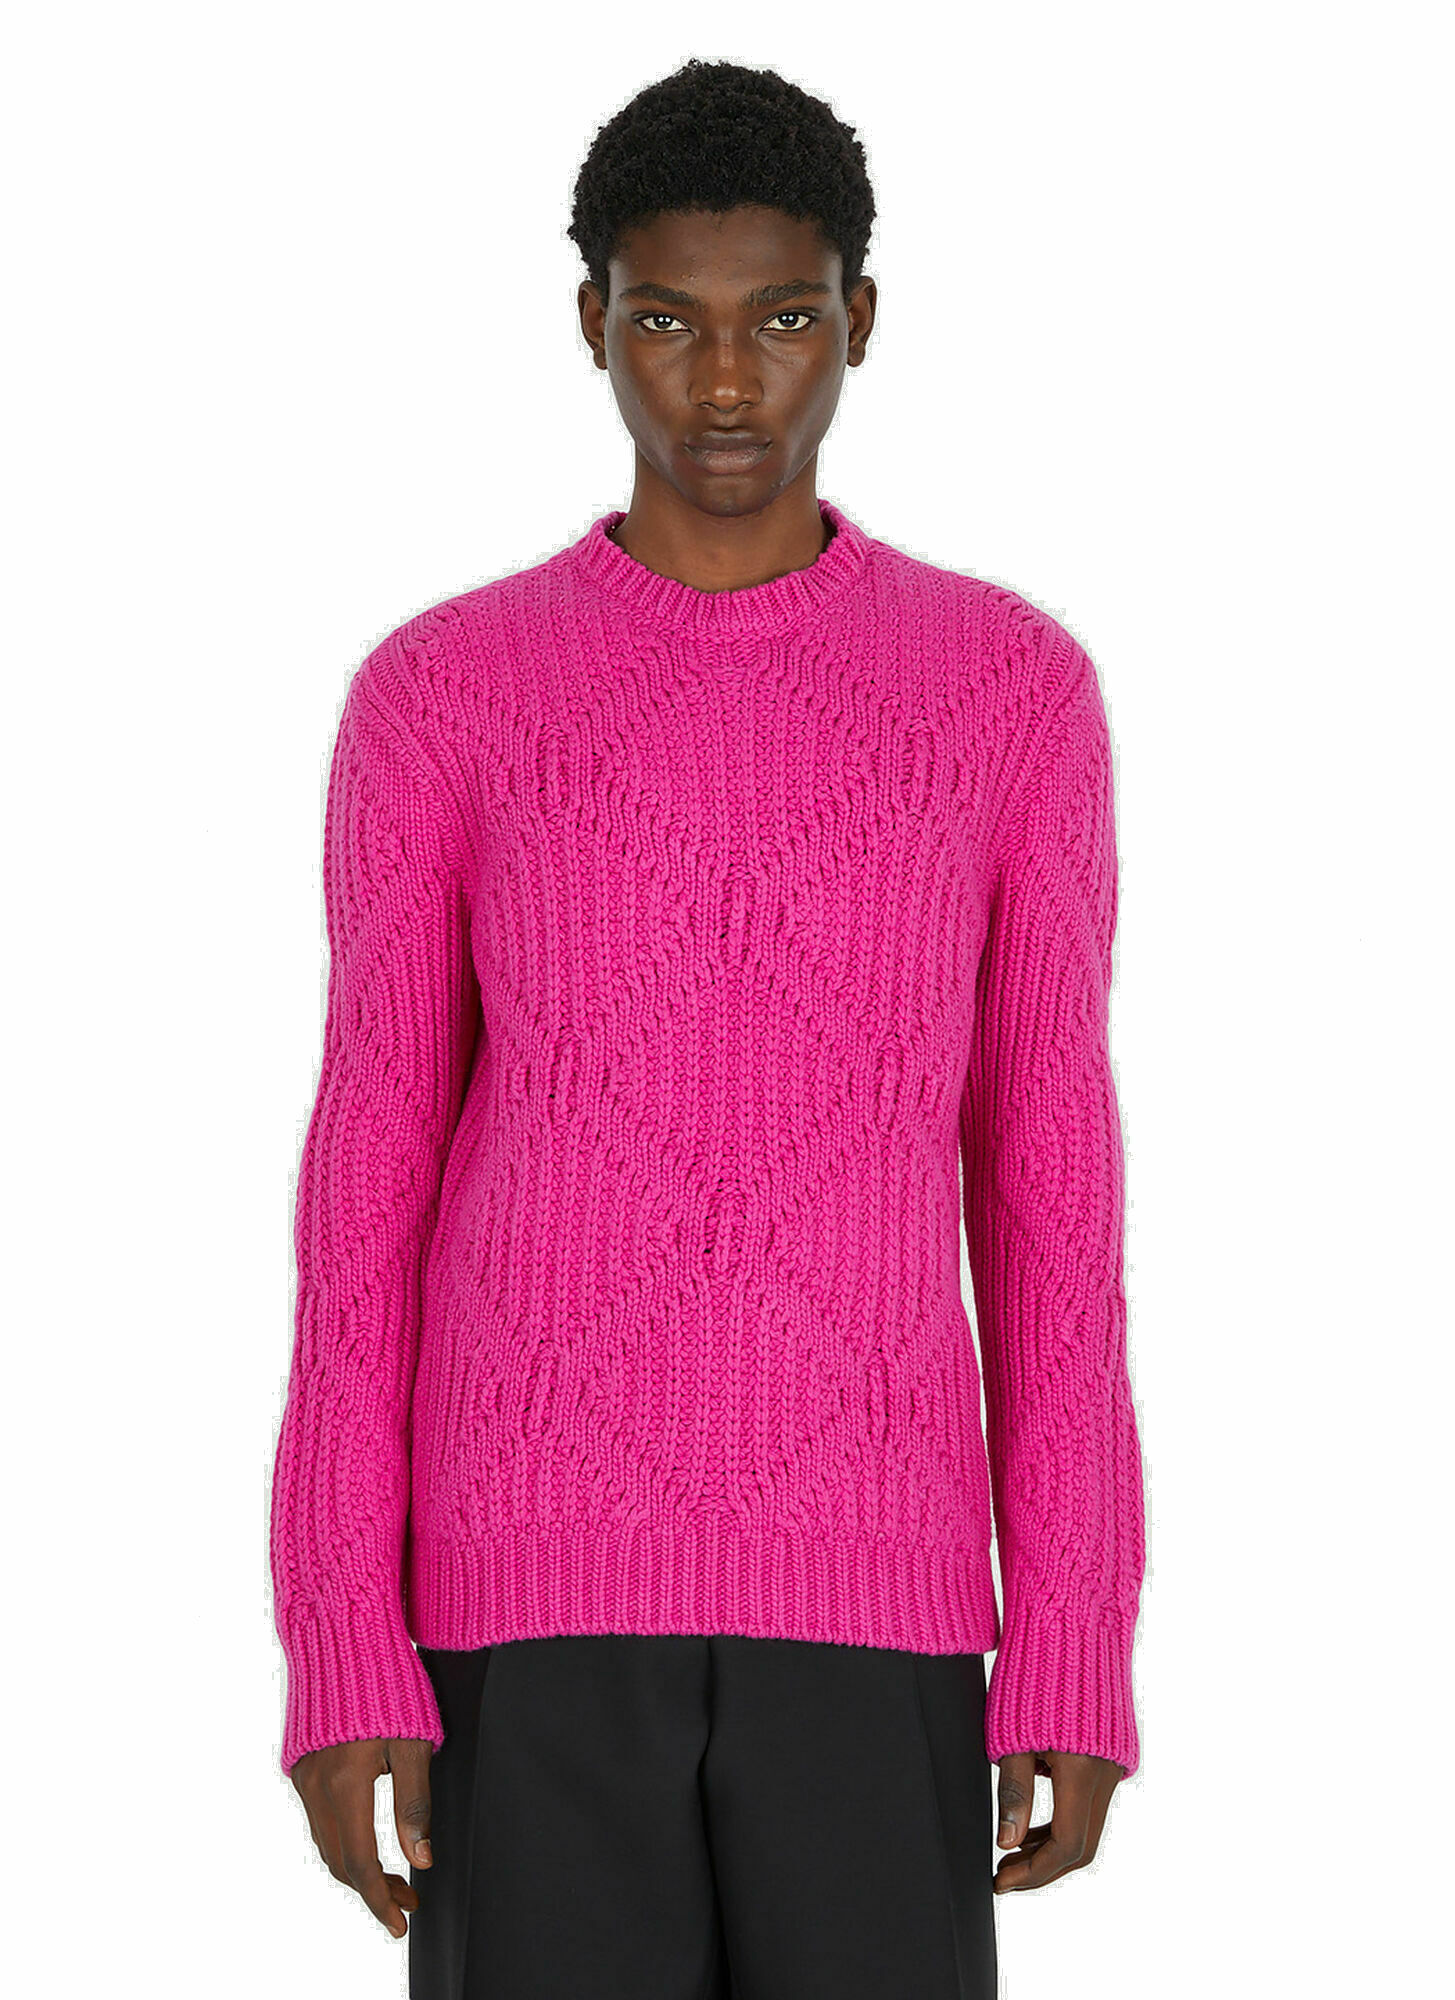 Photo: Geometric Motif Sweater in Pink